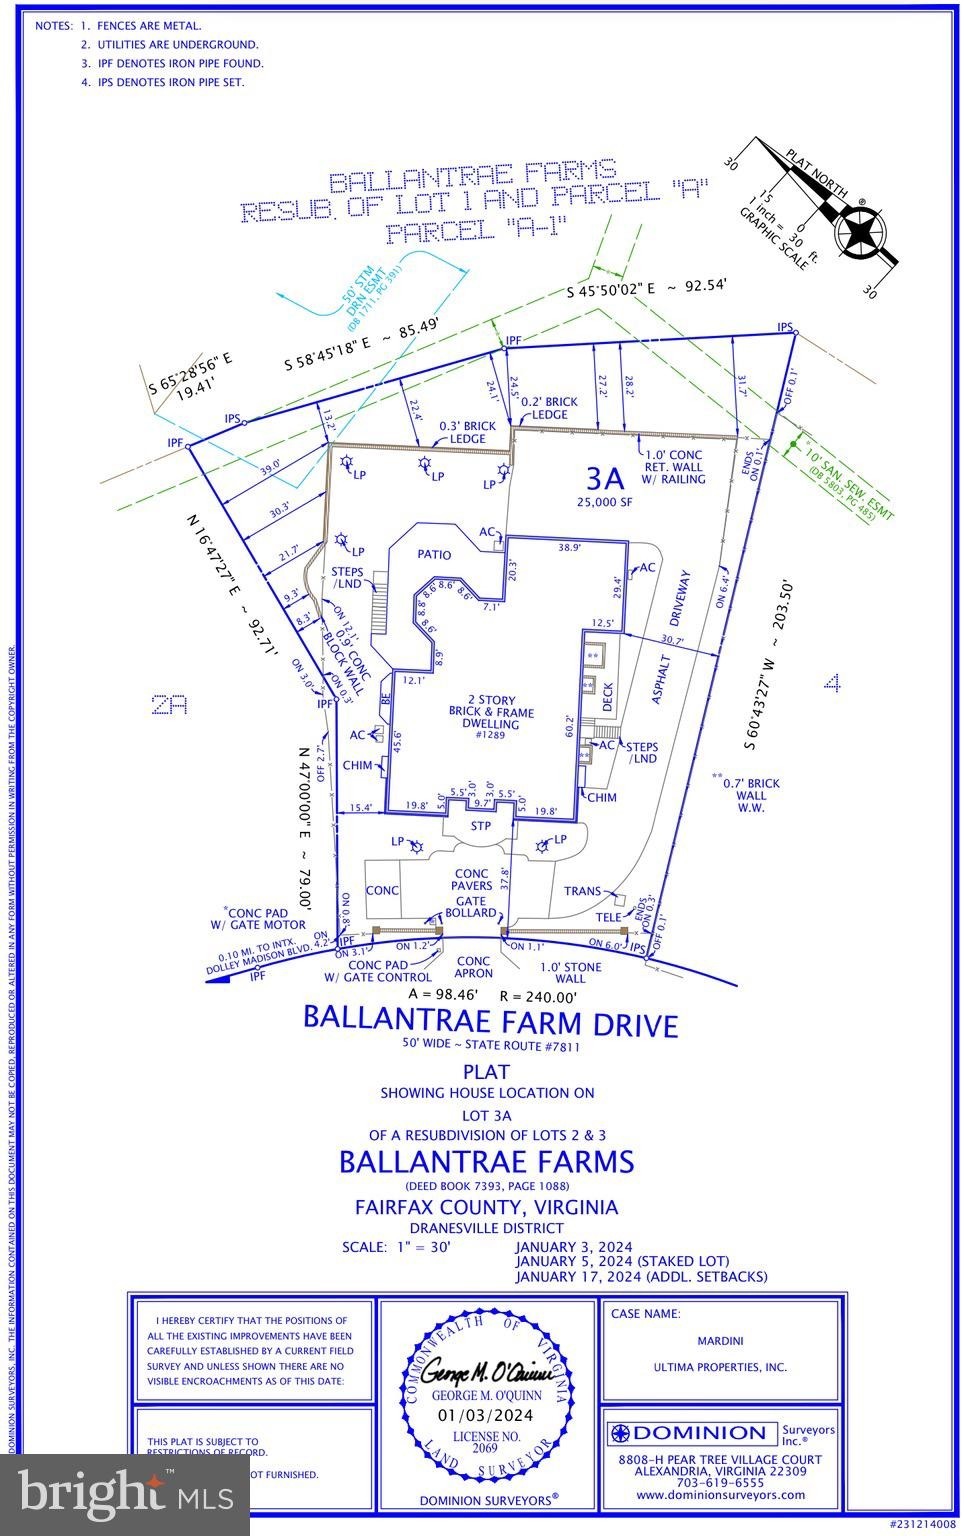 49. 1289 Ballantrae Farm Drive